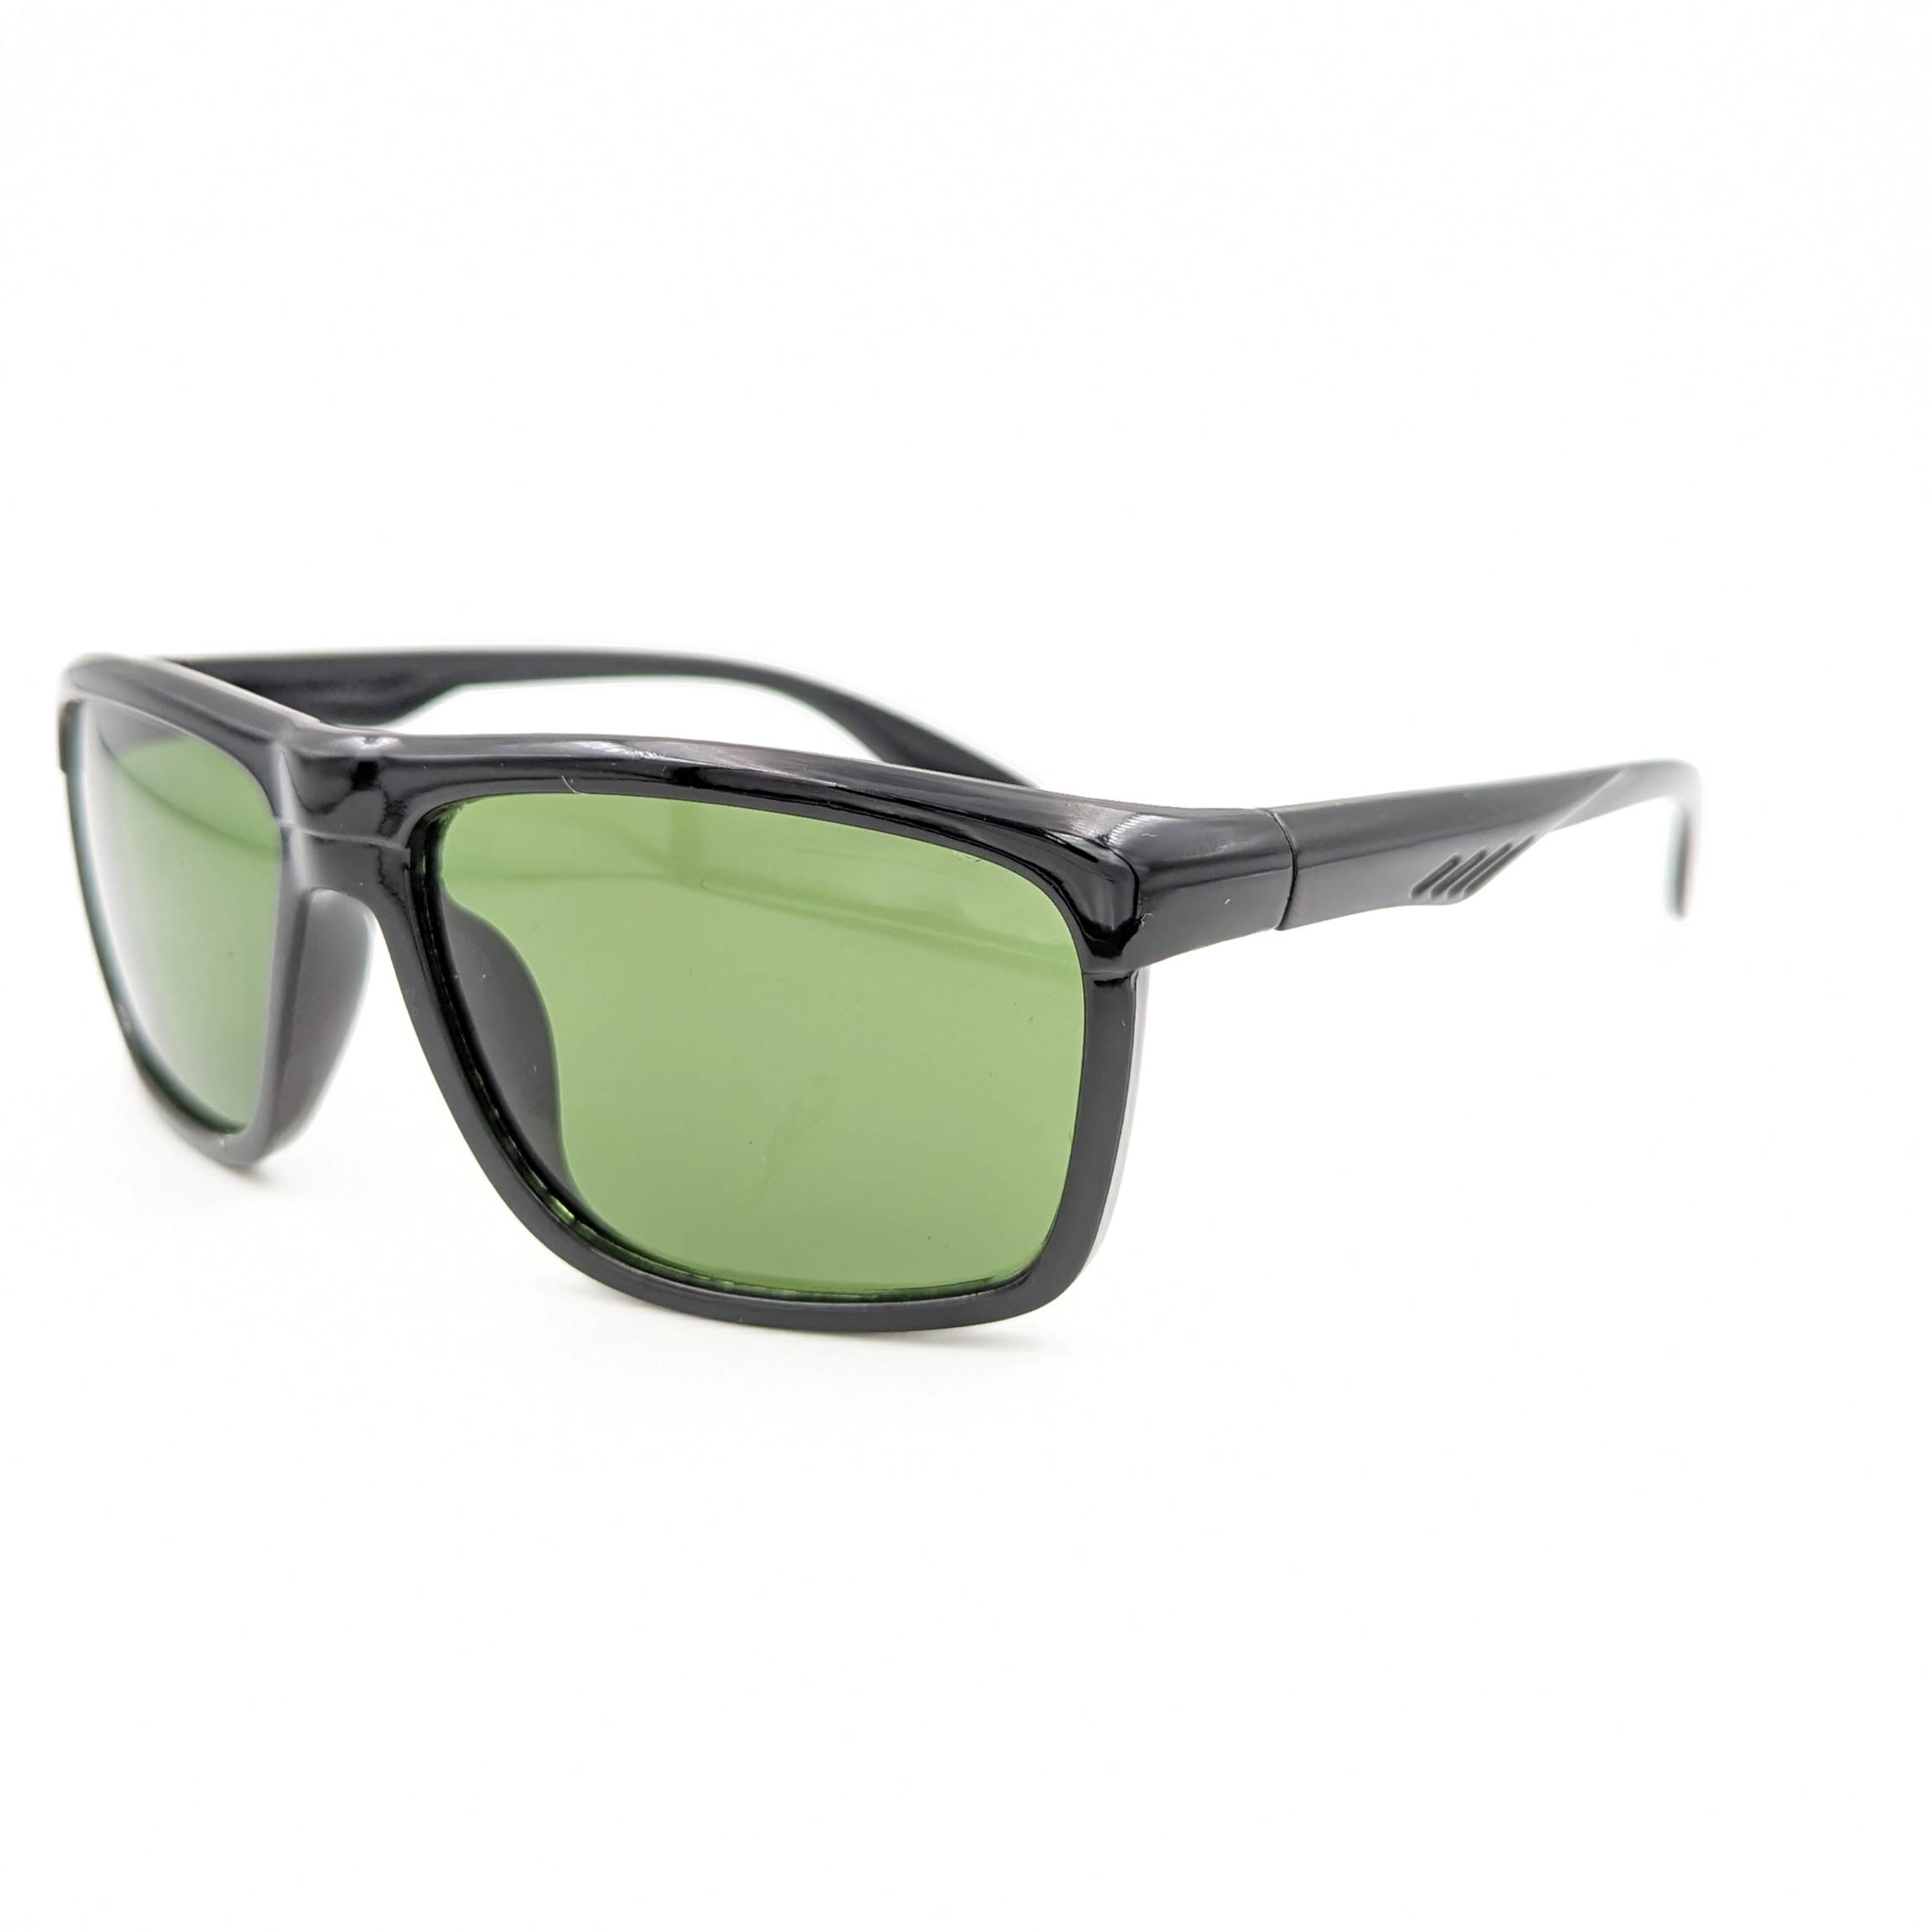 Black Rectangle Sunglasses - Dark Green Lens